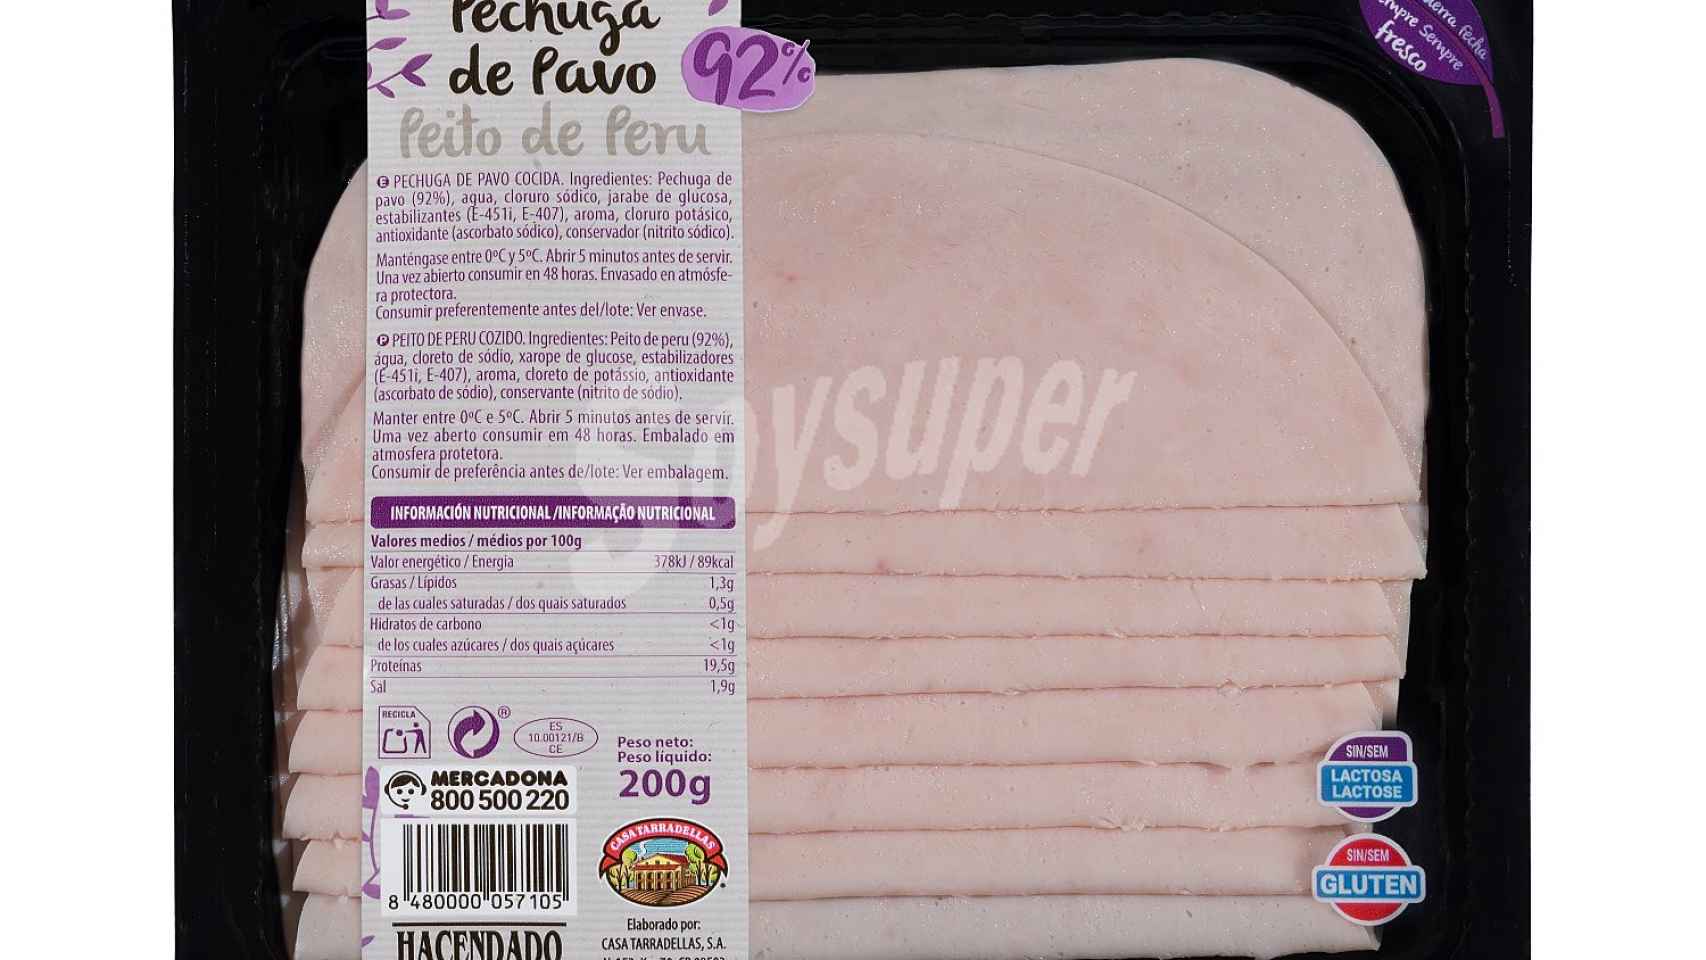 Nueva pechuga de pavo de Mercadona con 92% de carne.